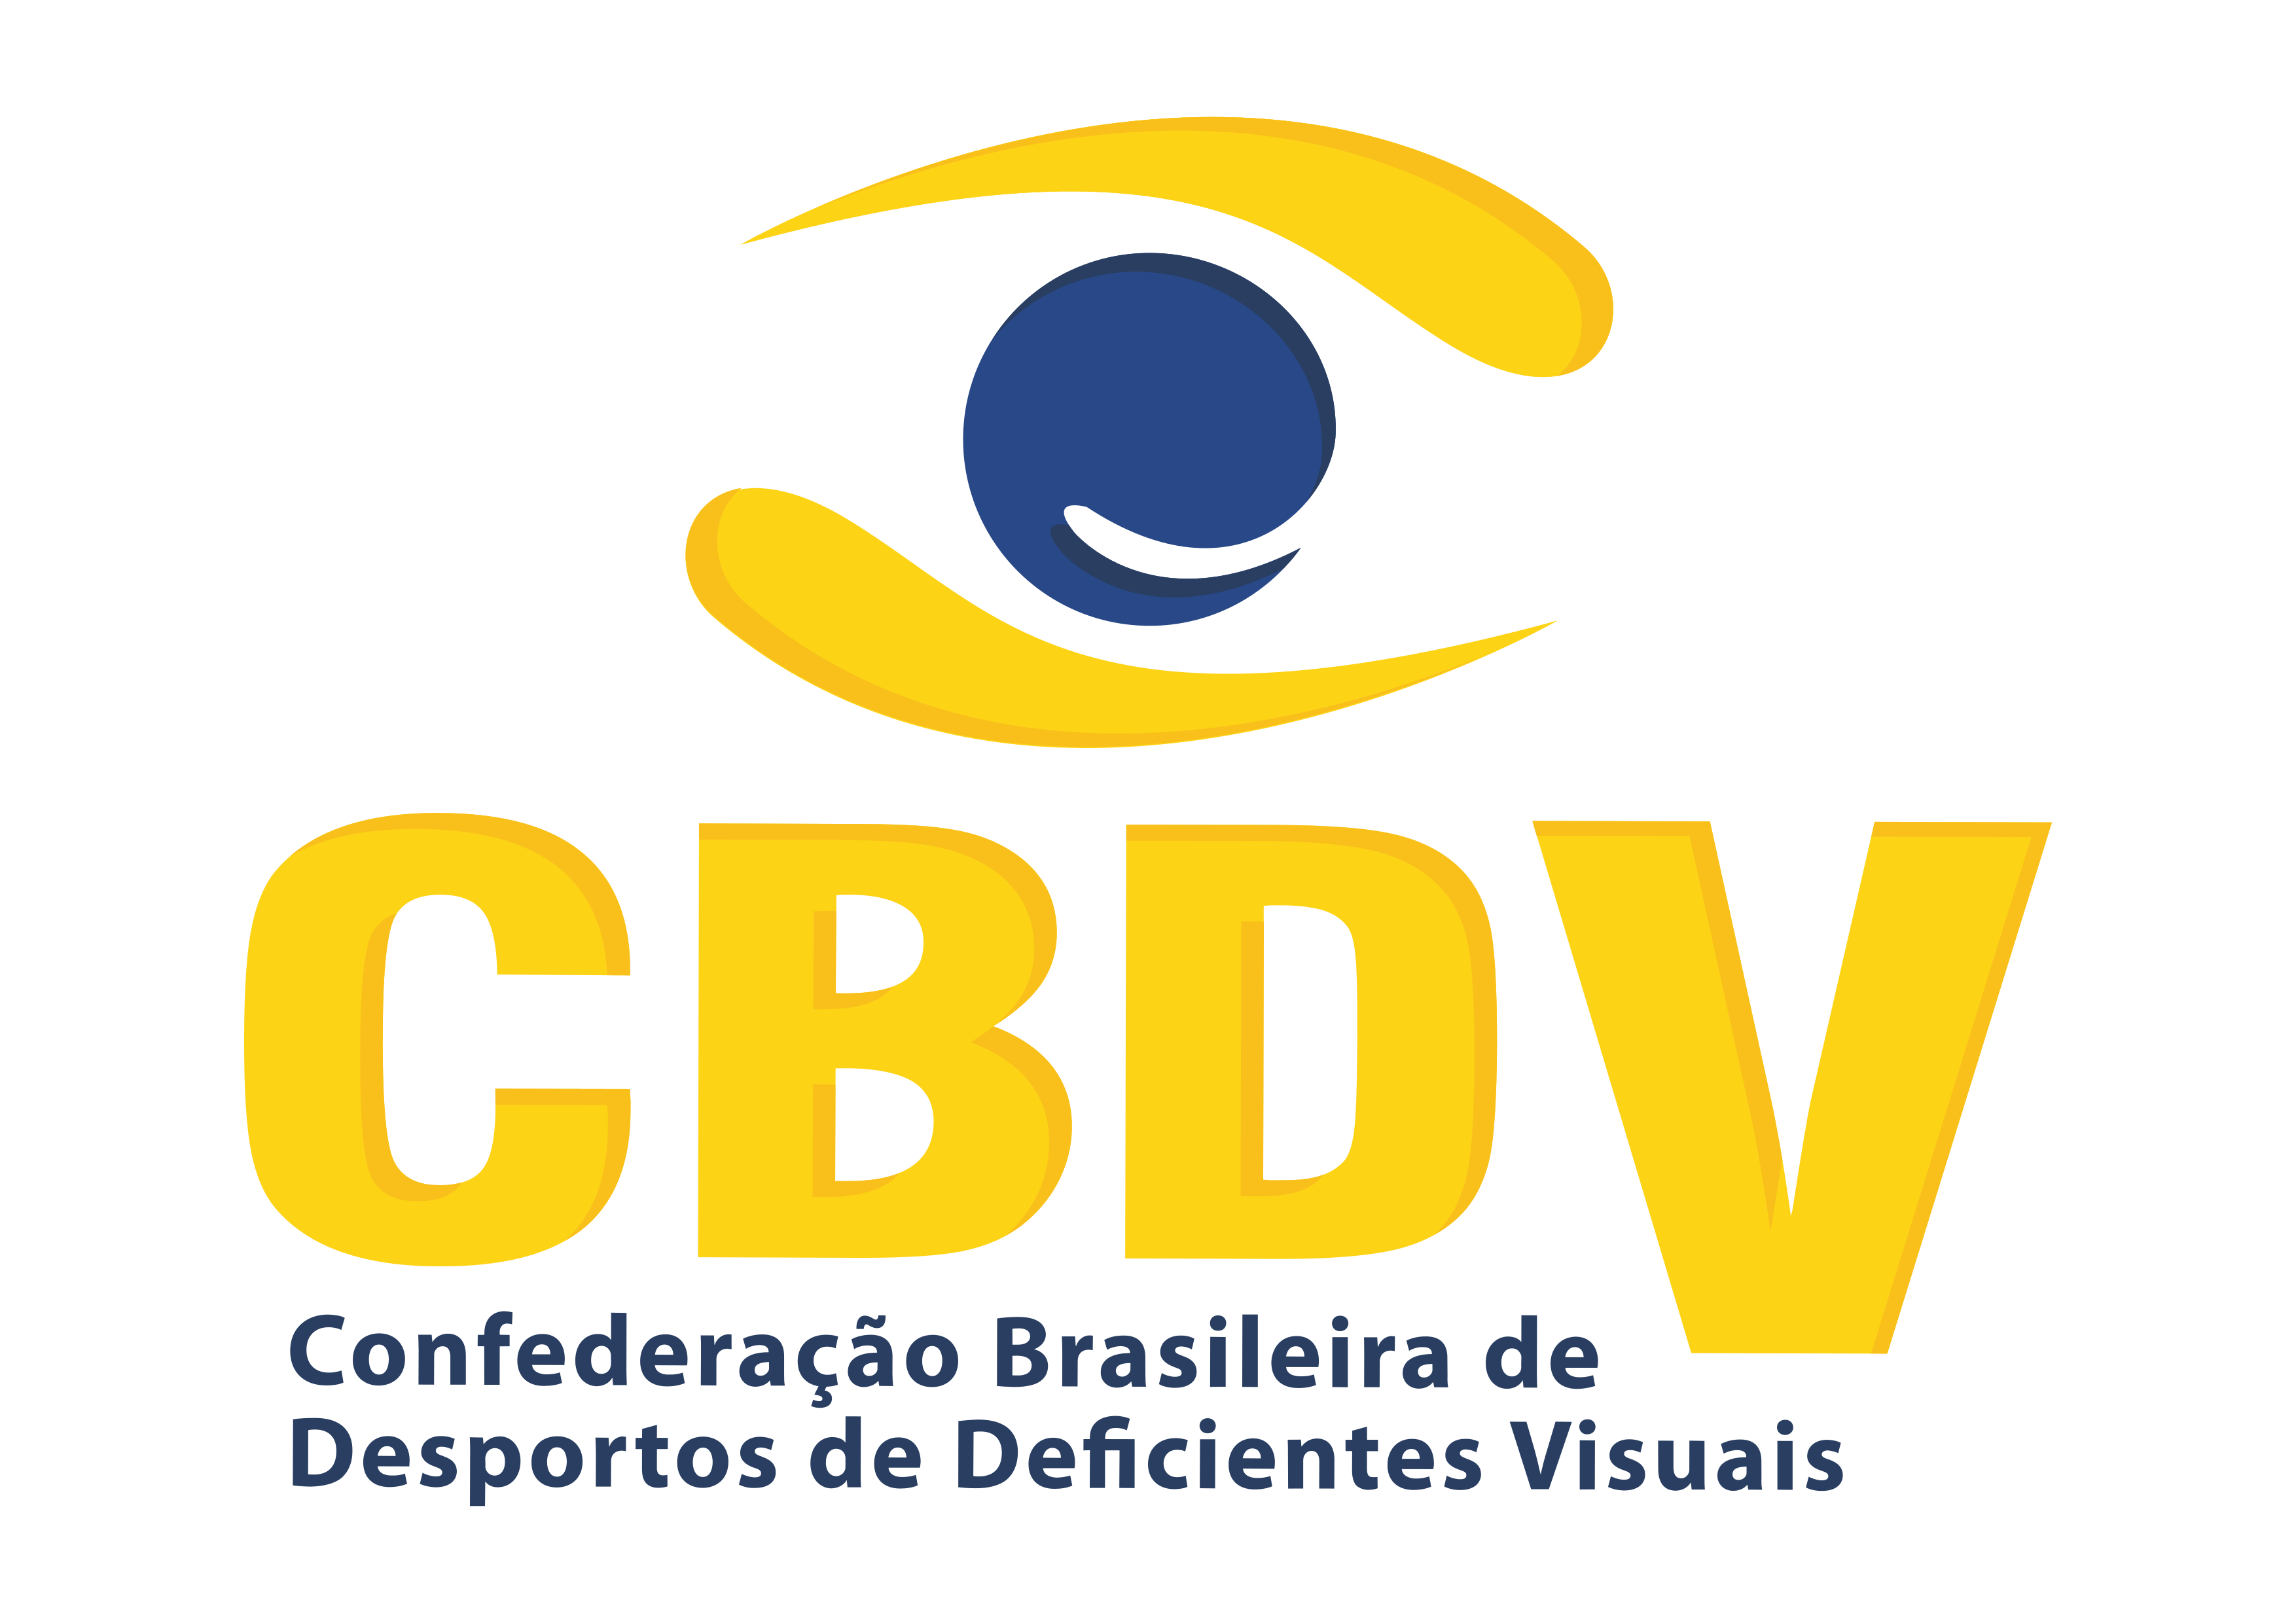 Logo da Confederação Brasileira de Desportos de Deficientes Visuais. Acima, uma ilustração amarela e azul de um olho. Abaixo, a sigla e o nome da Confederação.